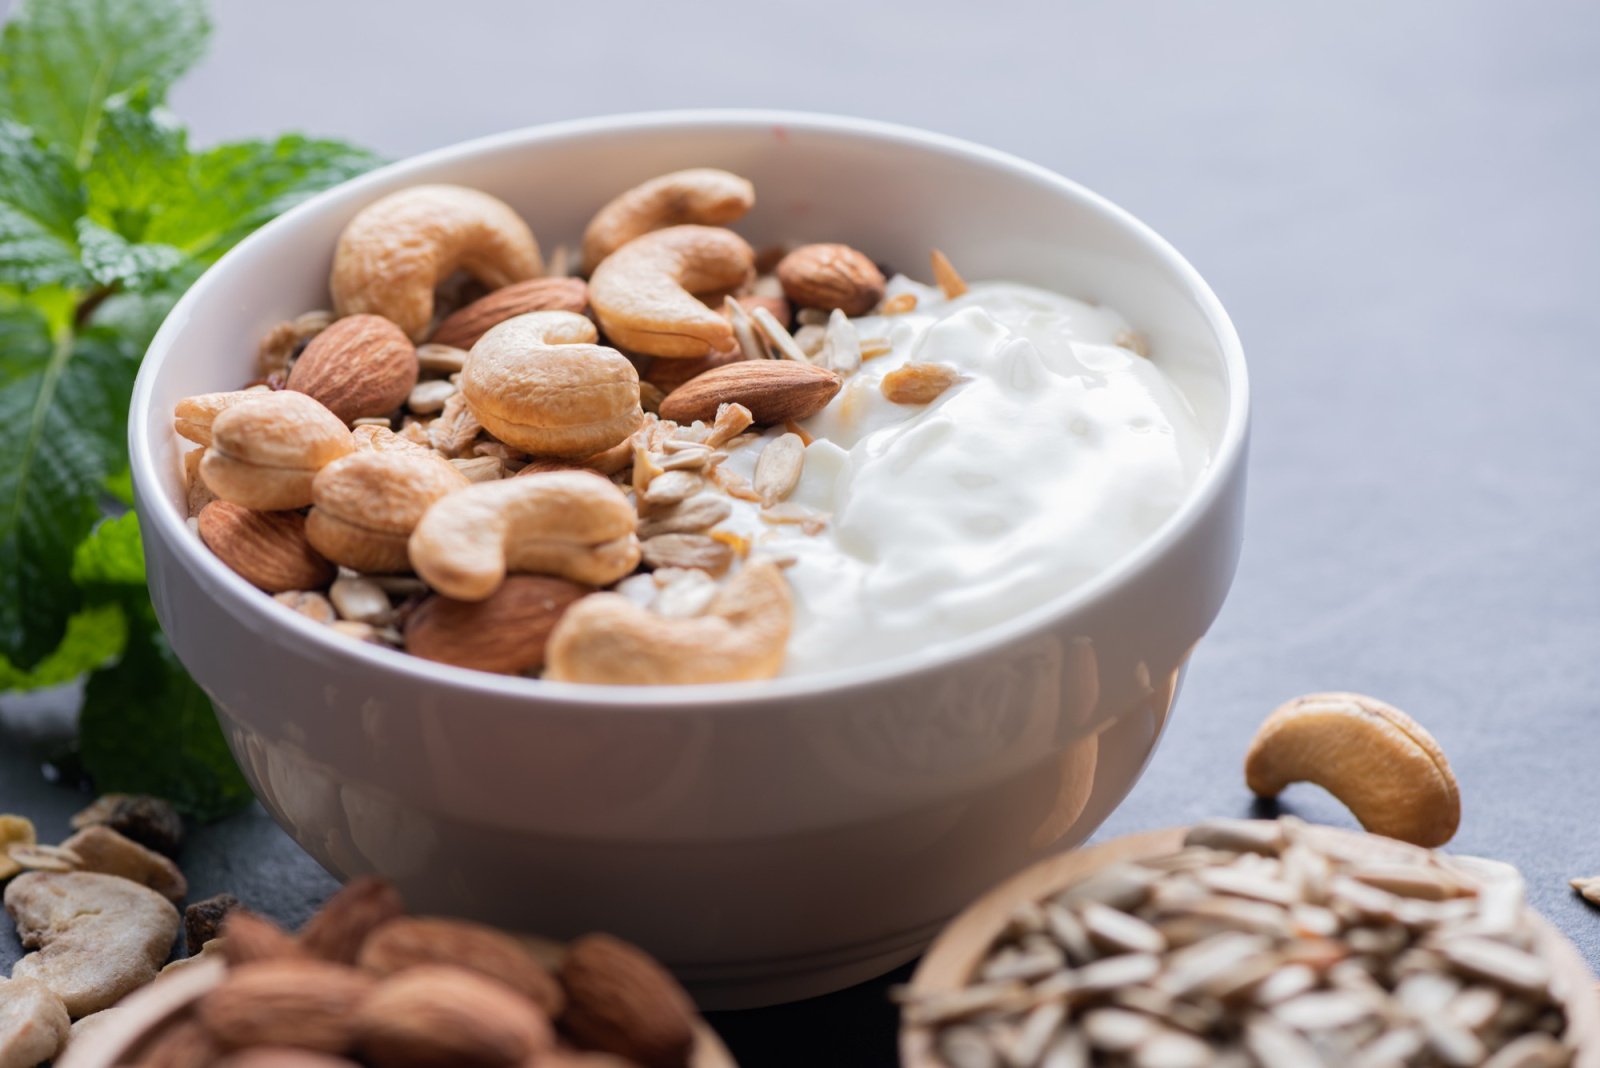 Действительно ли нужно замачивать орехи перед едой?